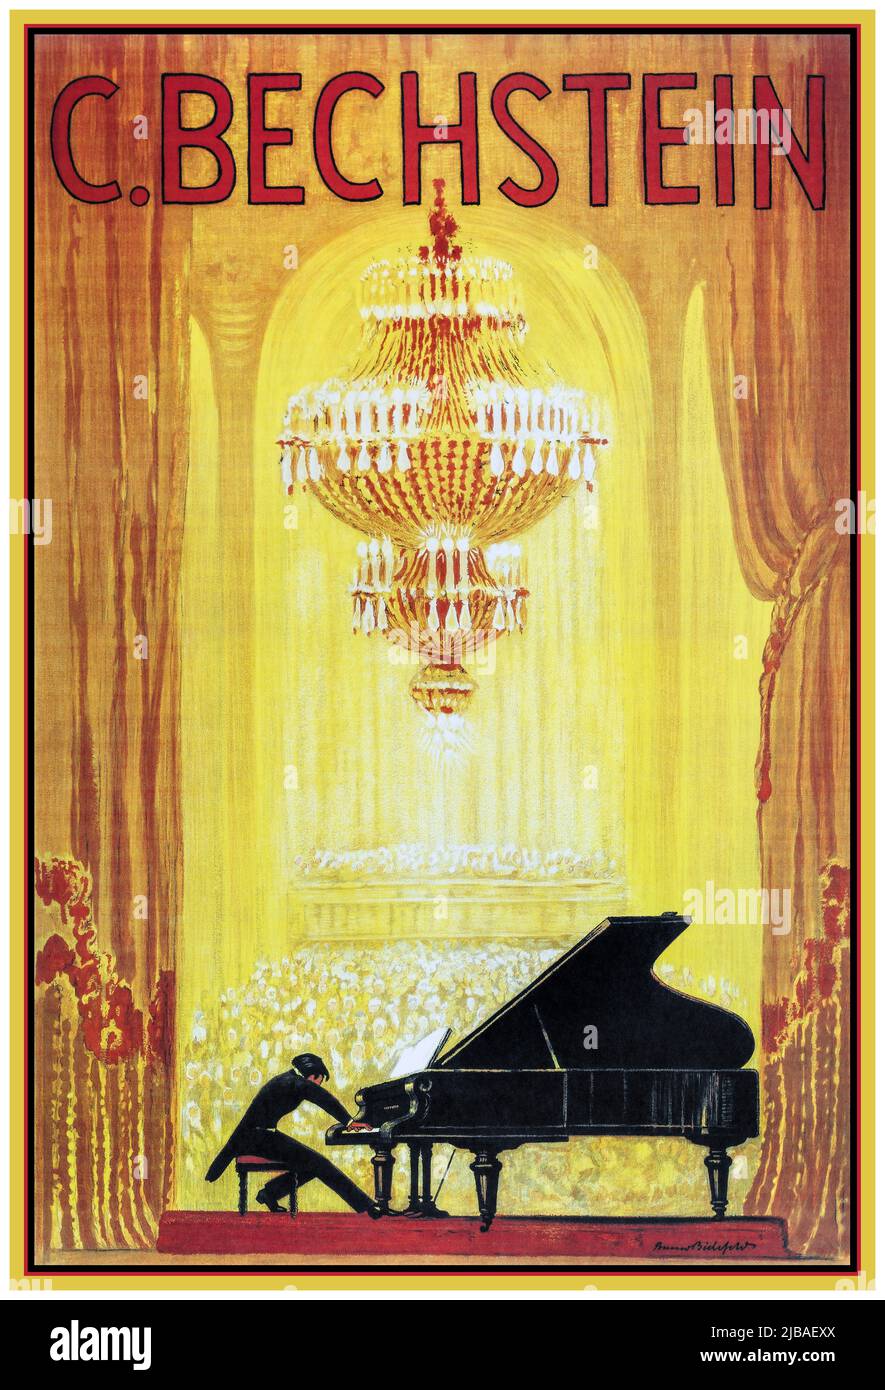 FLÜGEL BECHSTEIN 1900s Werbung Plakat für den deutschen Klavierhersteller C. Bechstein erschien um 1920. C. Bechstein Factory, Berlin, Deutschland 1920s Musikinstrument Werbelithographie Plakat Stockfoto